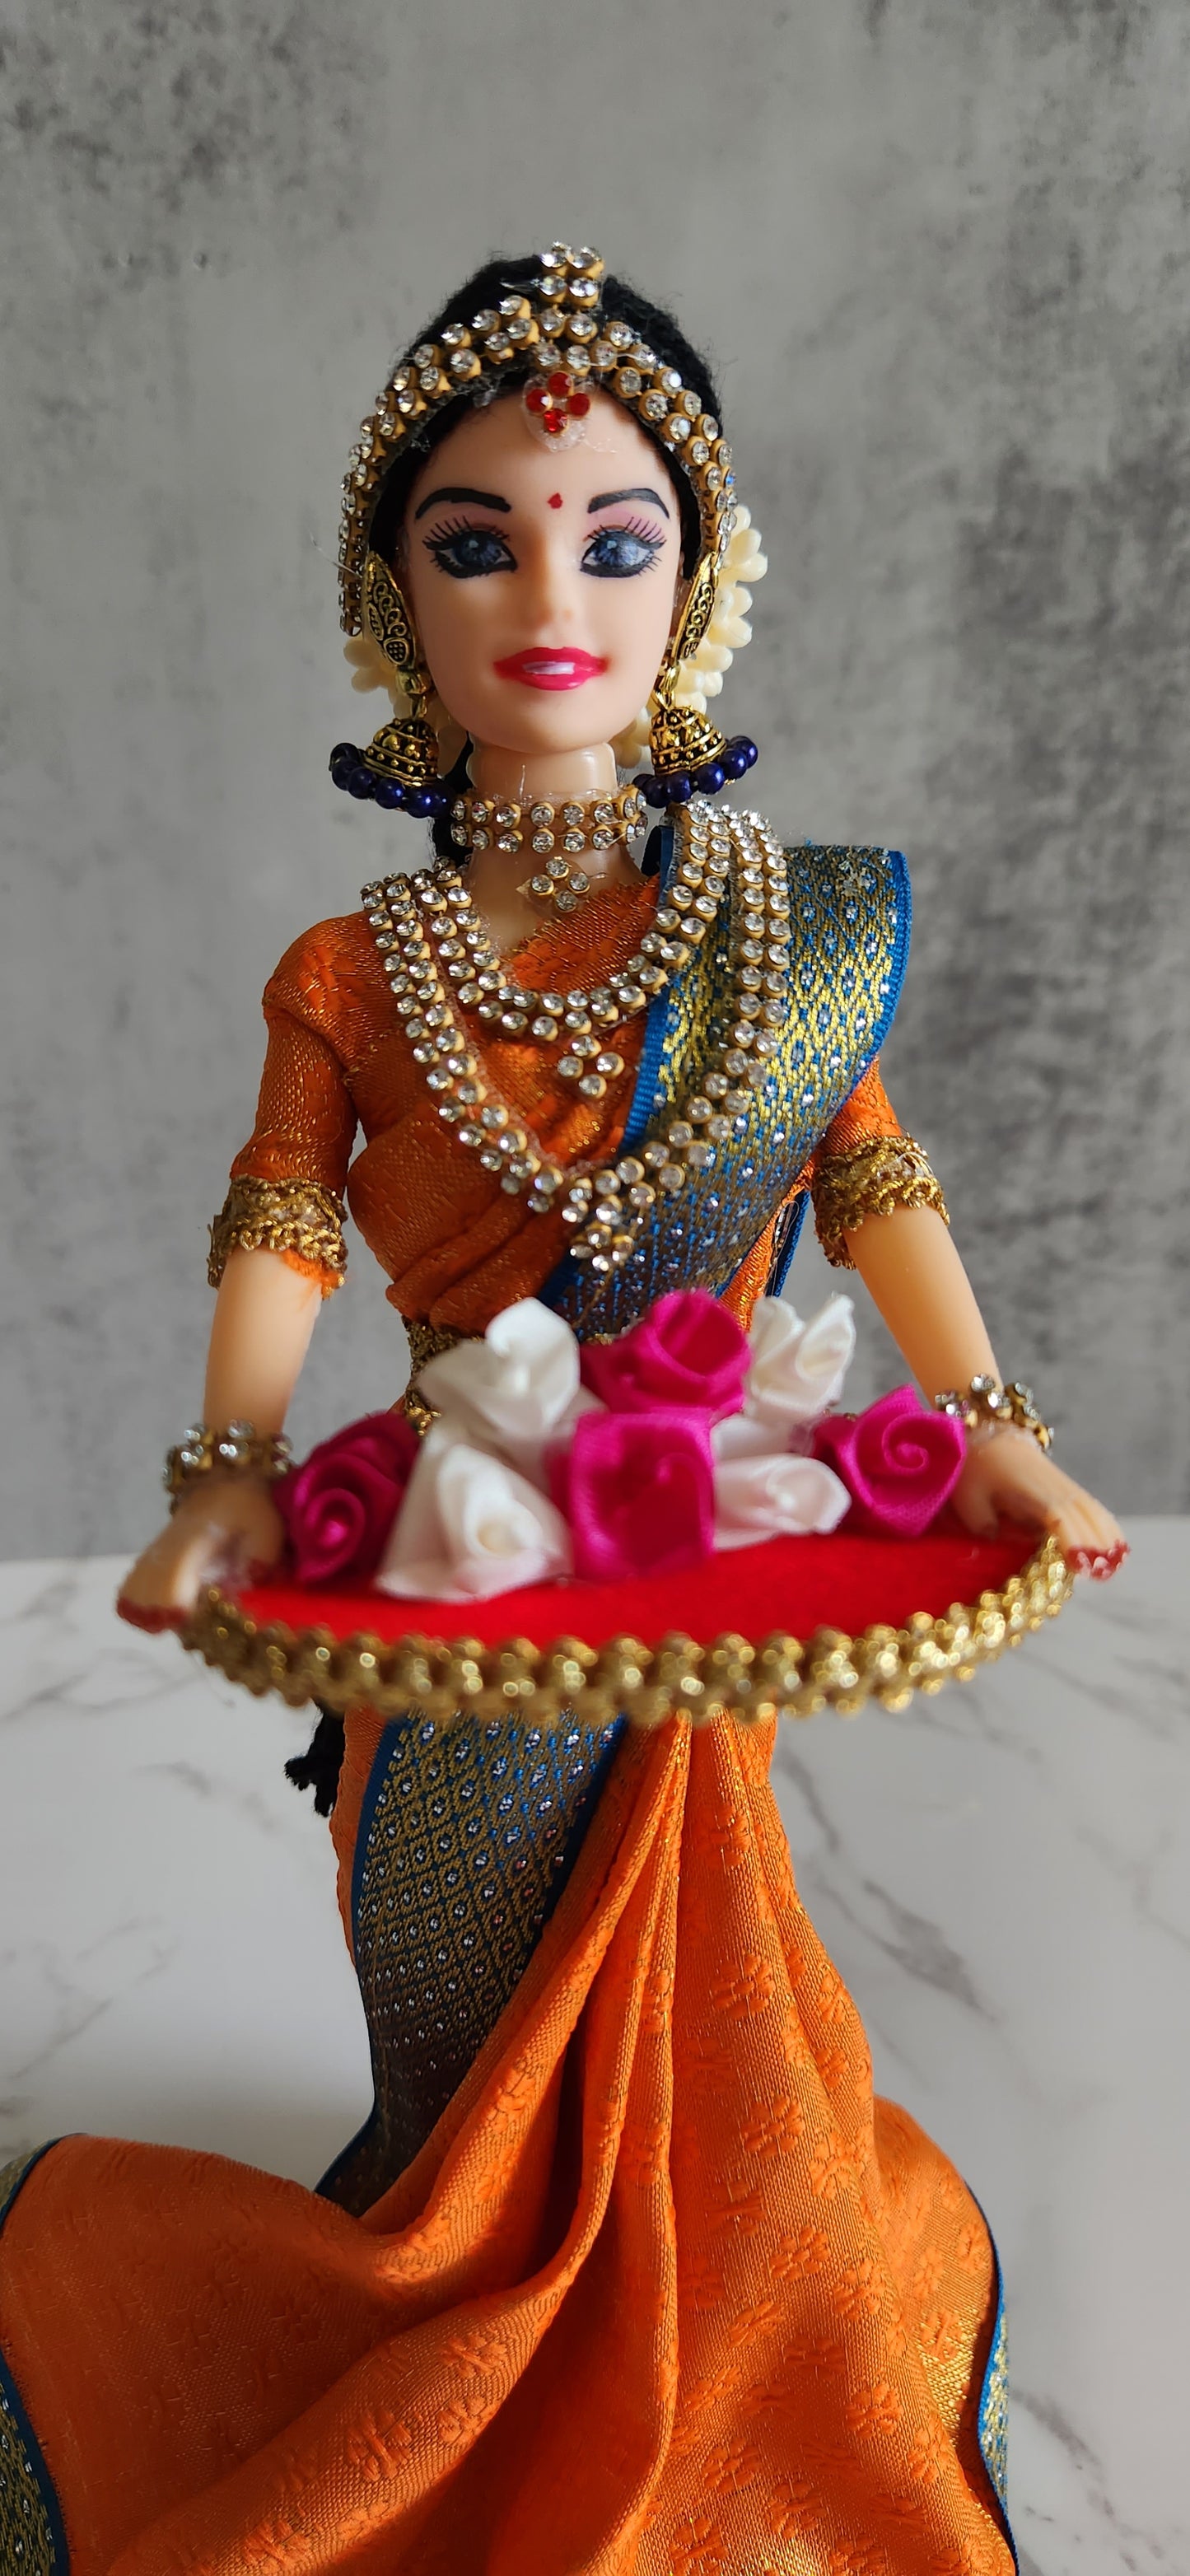 Indian Ethnic Dolls - Set of 5